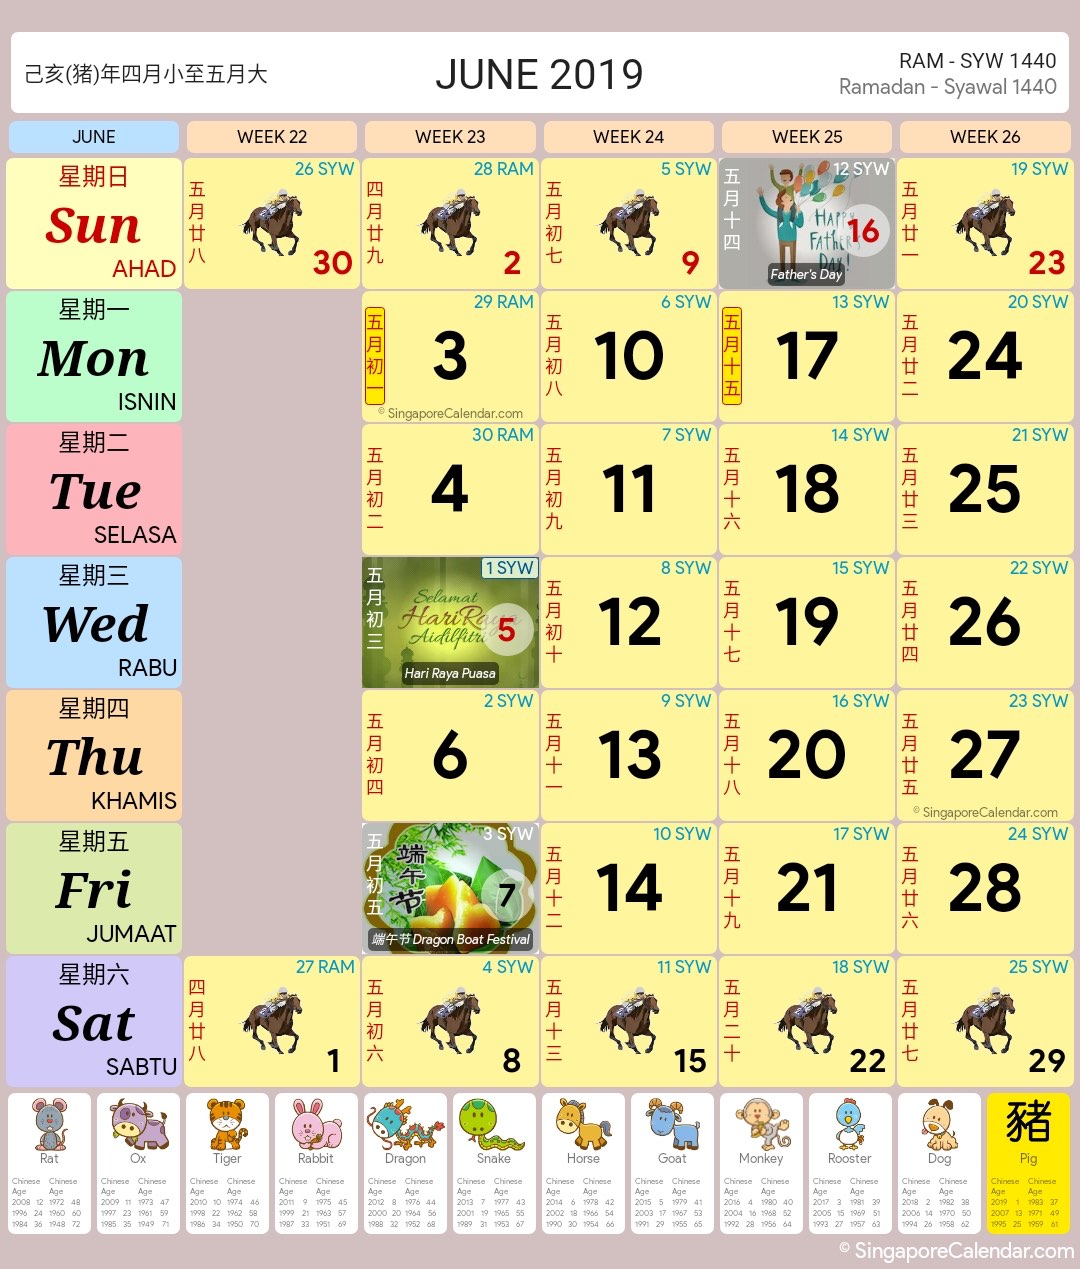 Singapore Calendar Year 2019 - Singapore Calendar